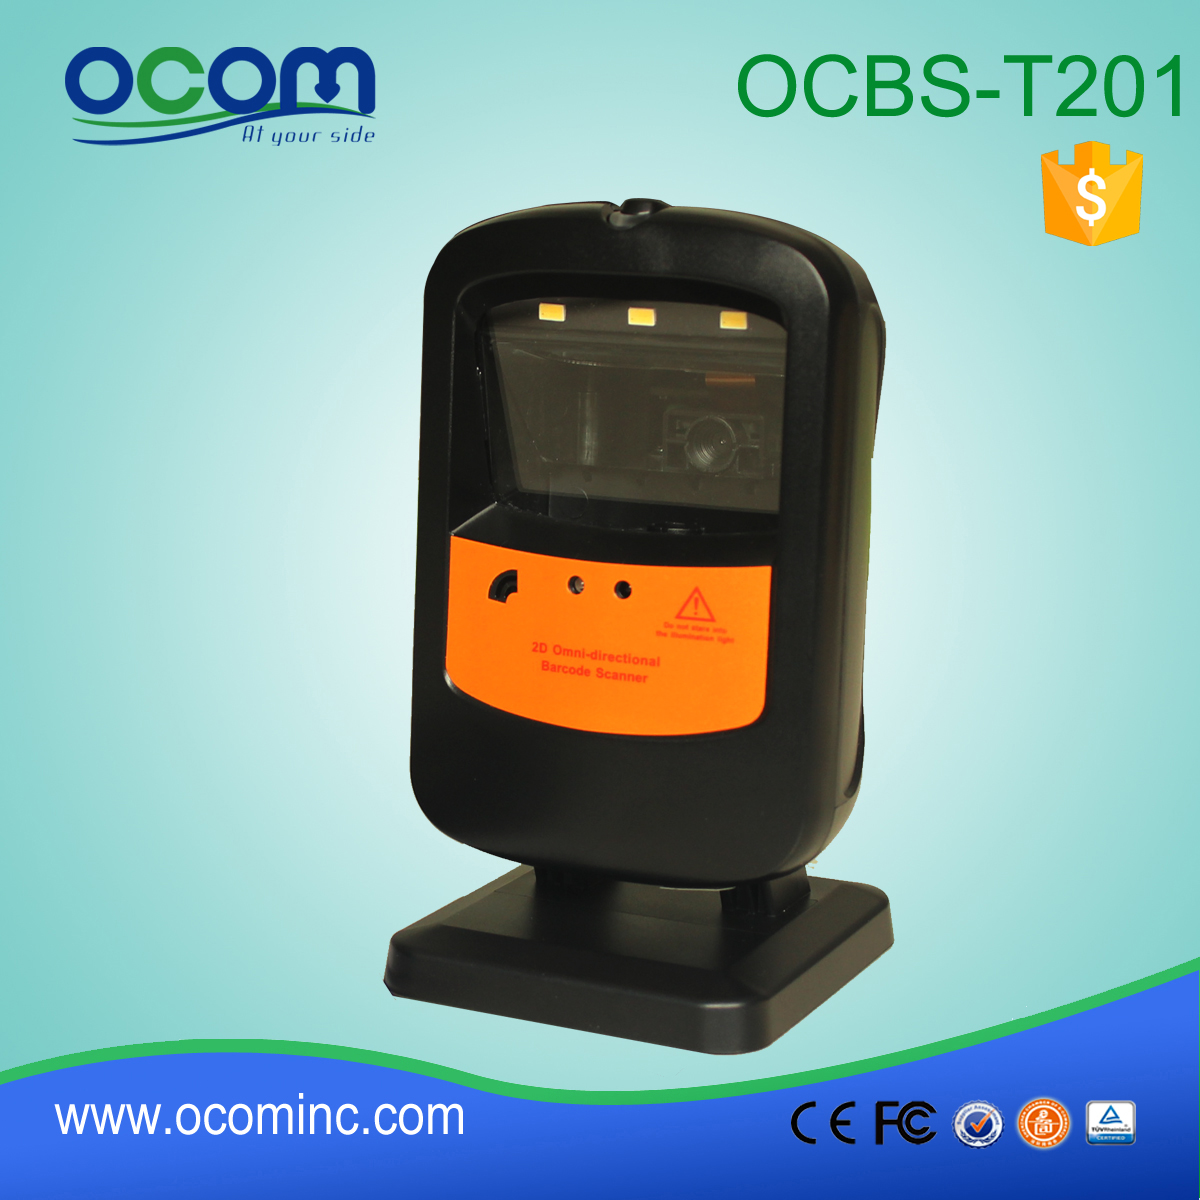 OCBs-T201: omnidirecional preço do scanner de código de barras, leitor de código de barras módulo